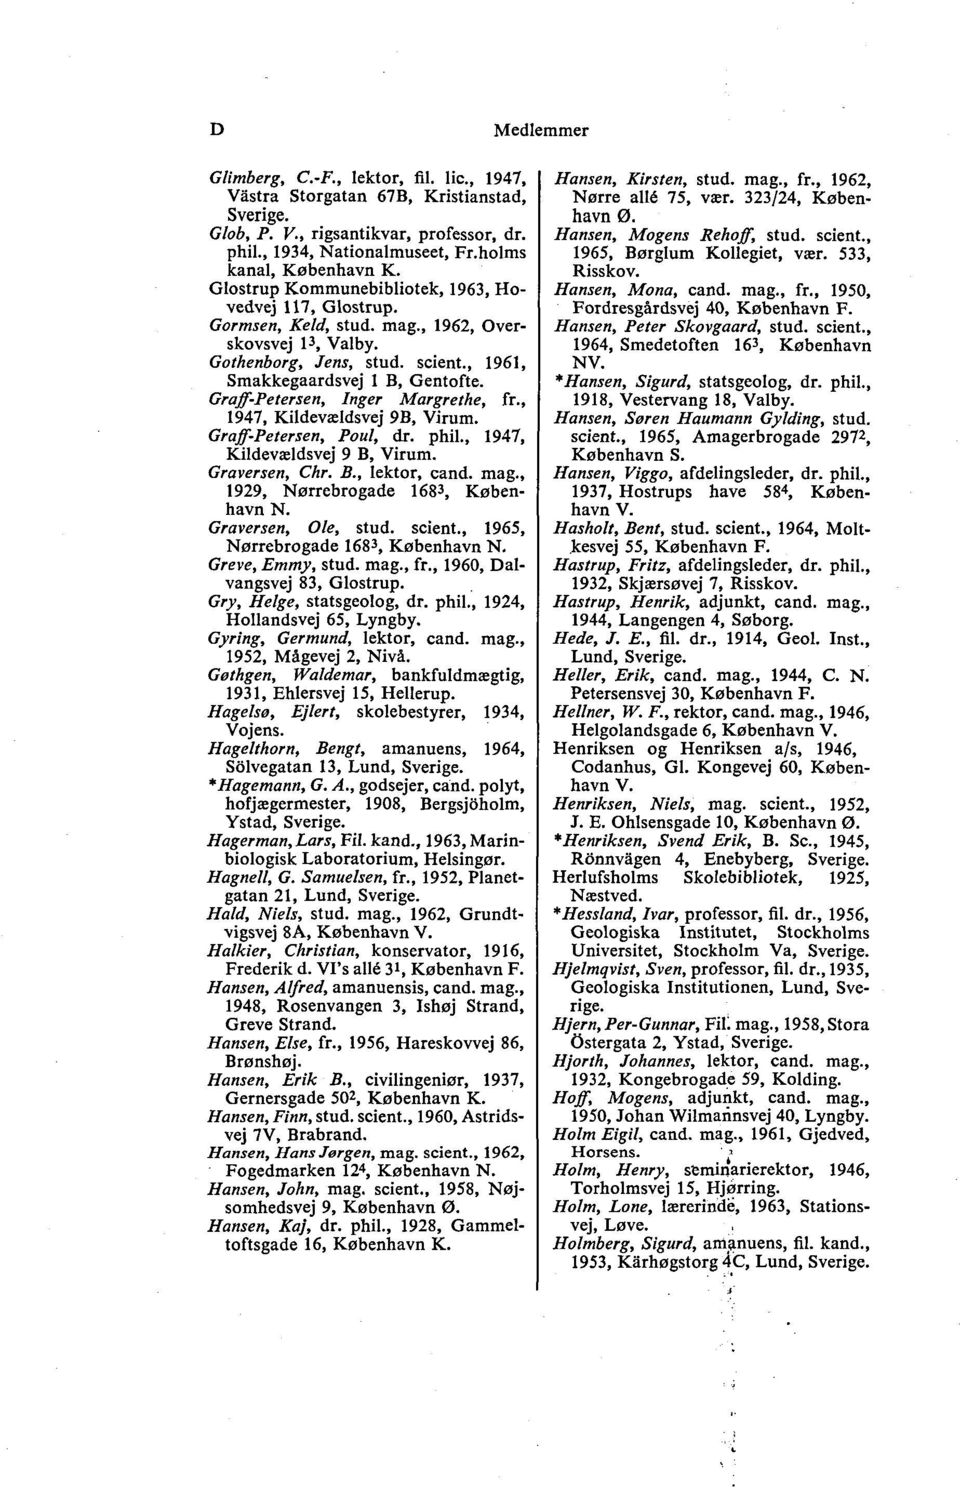 Graff-Petersen, Inger Margrethe, fr., 1947, Kildevældsvej 9B, Virum. Graff-Petersen, Poul, dr. phil., 1947, Kildevældsvej 9 B, Virum. Graversen, Chr. B., lektor, cand. mag.